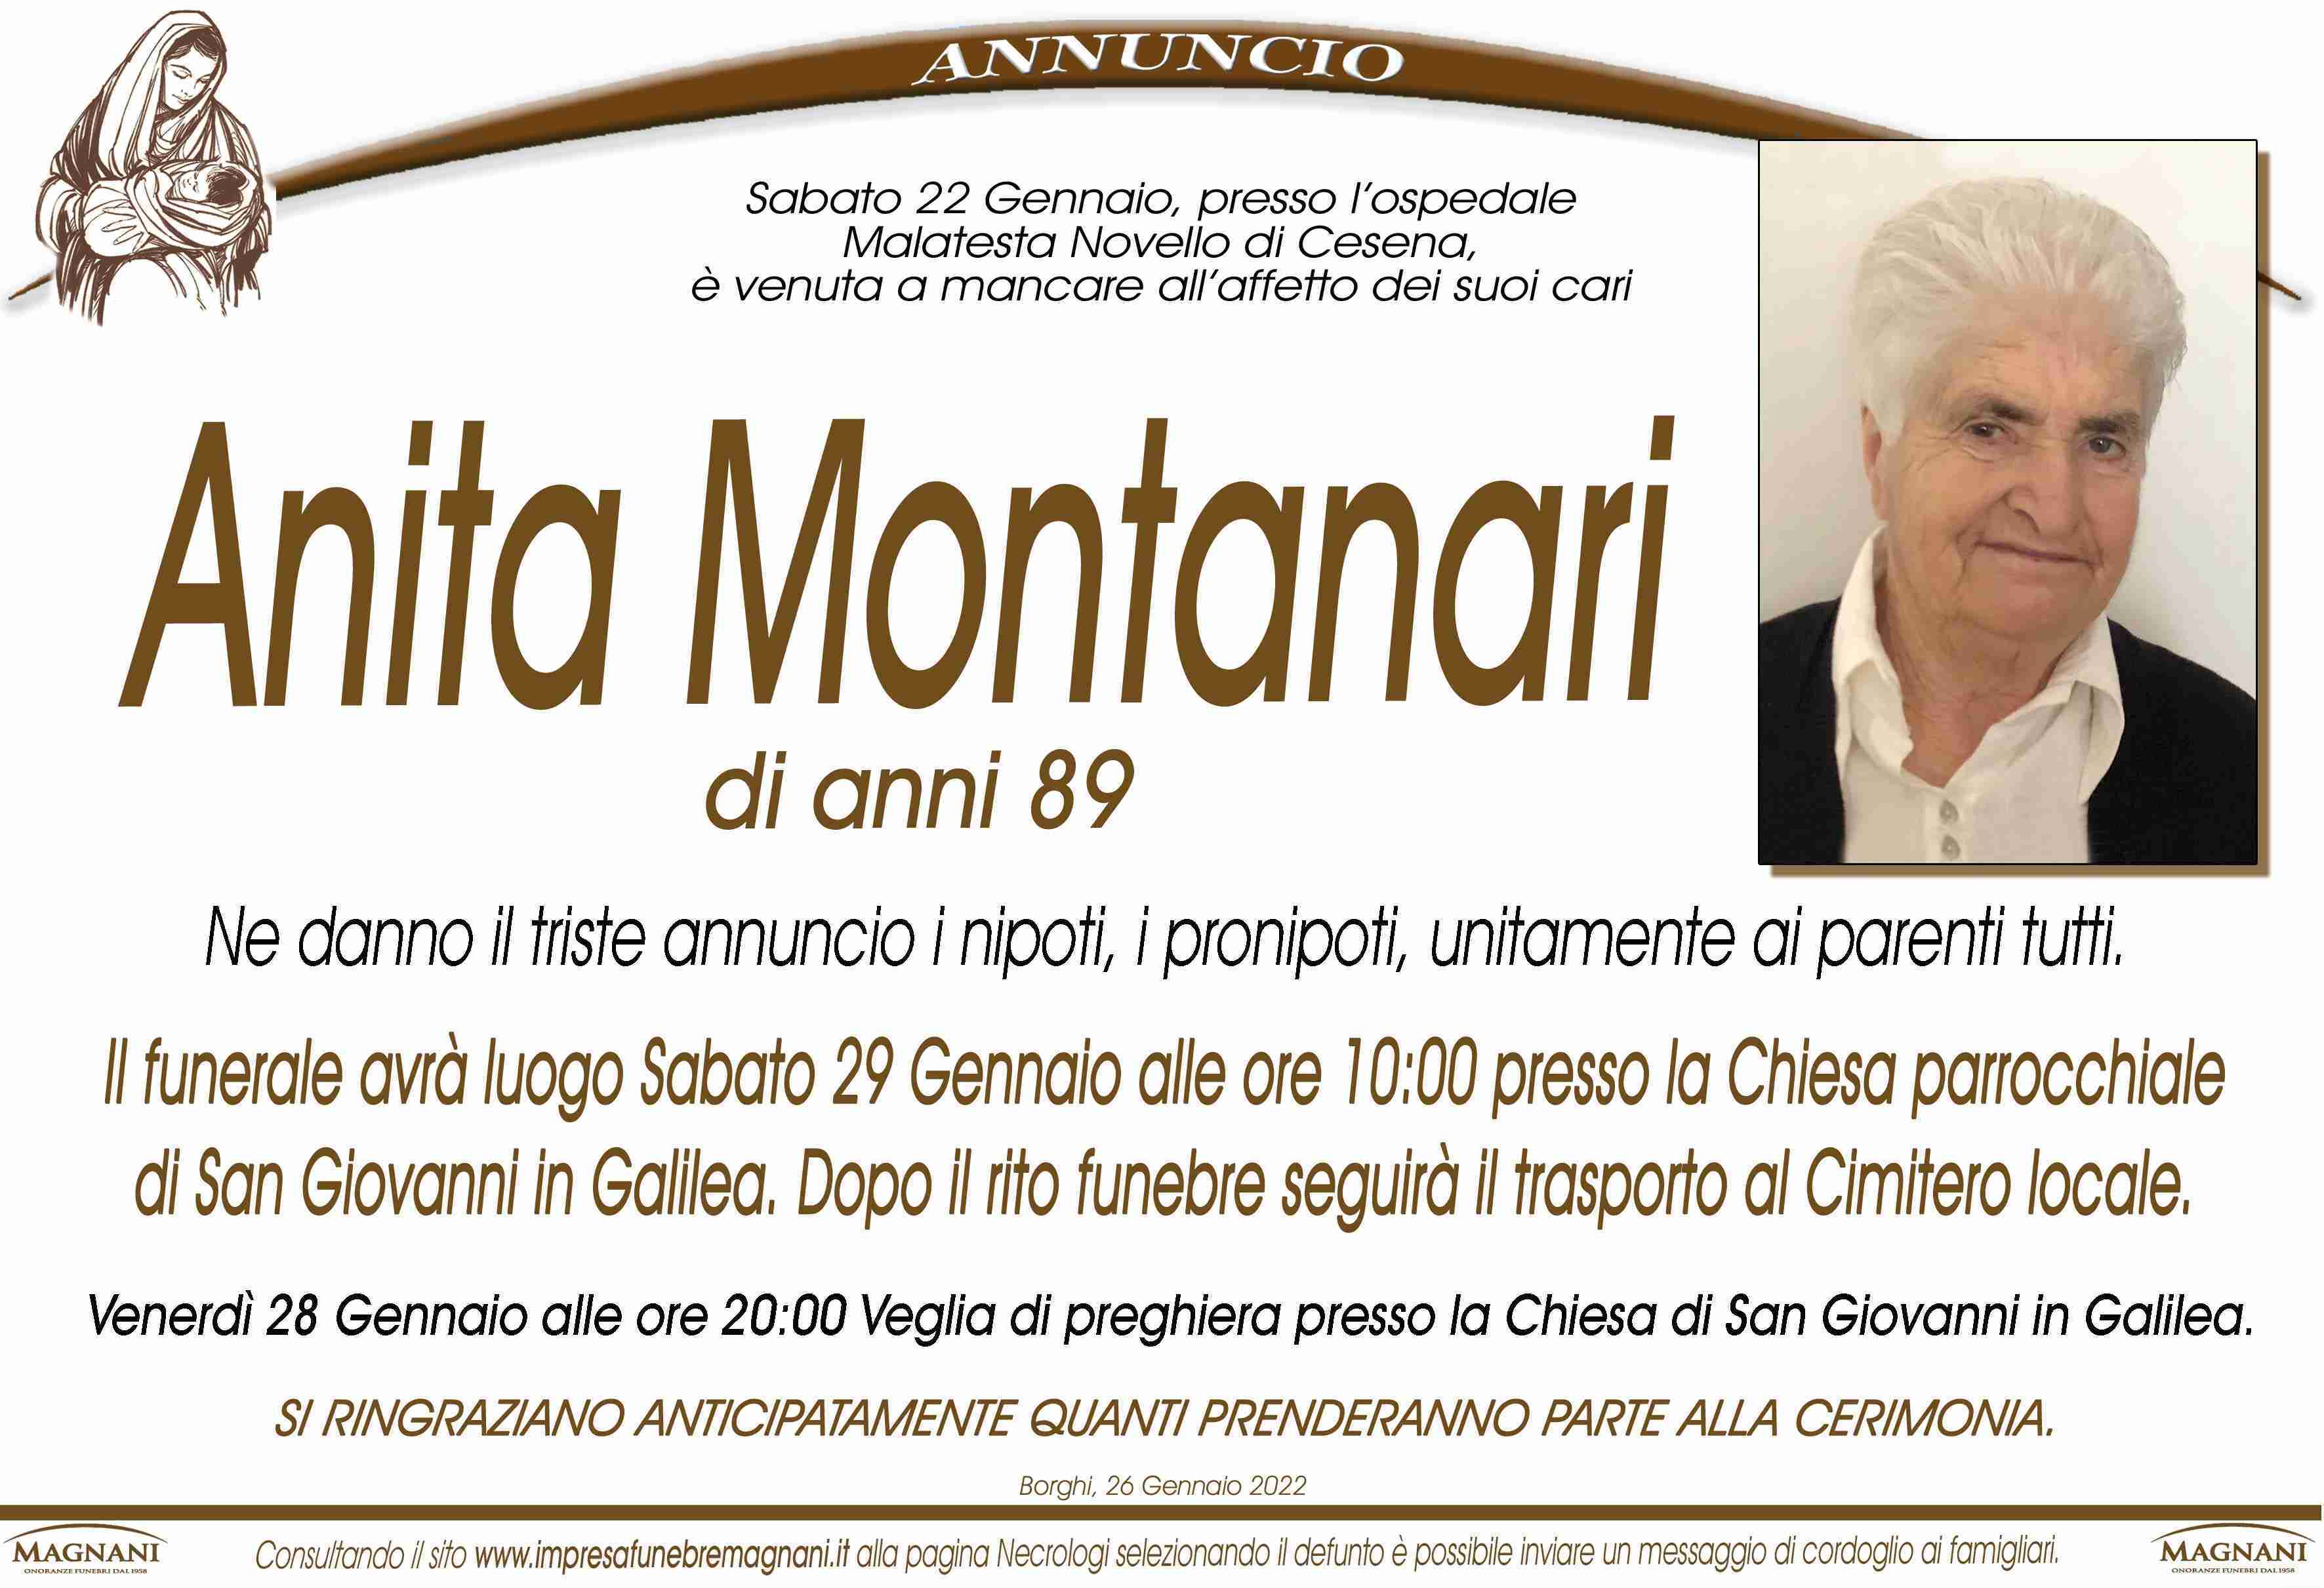 Anita Montanari